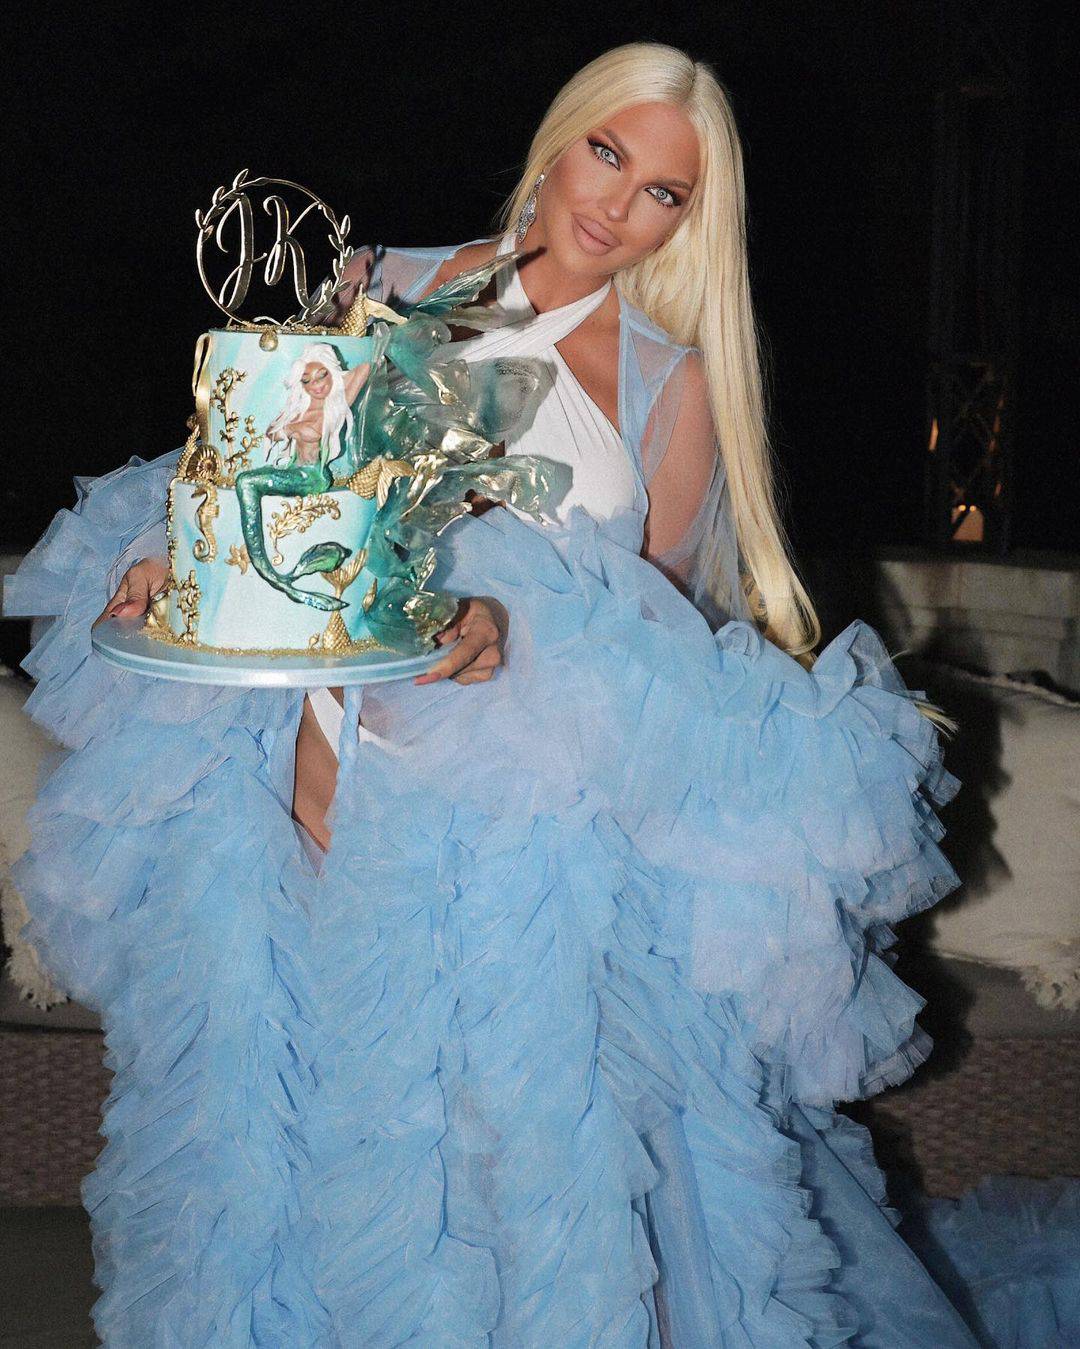 Karleuša proslavila rođendan, fotkala se s tortom pa okupala u bazenu u dizajnerskoj haljini